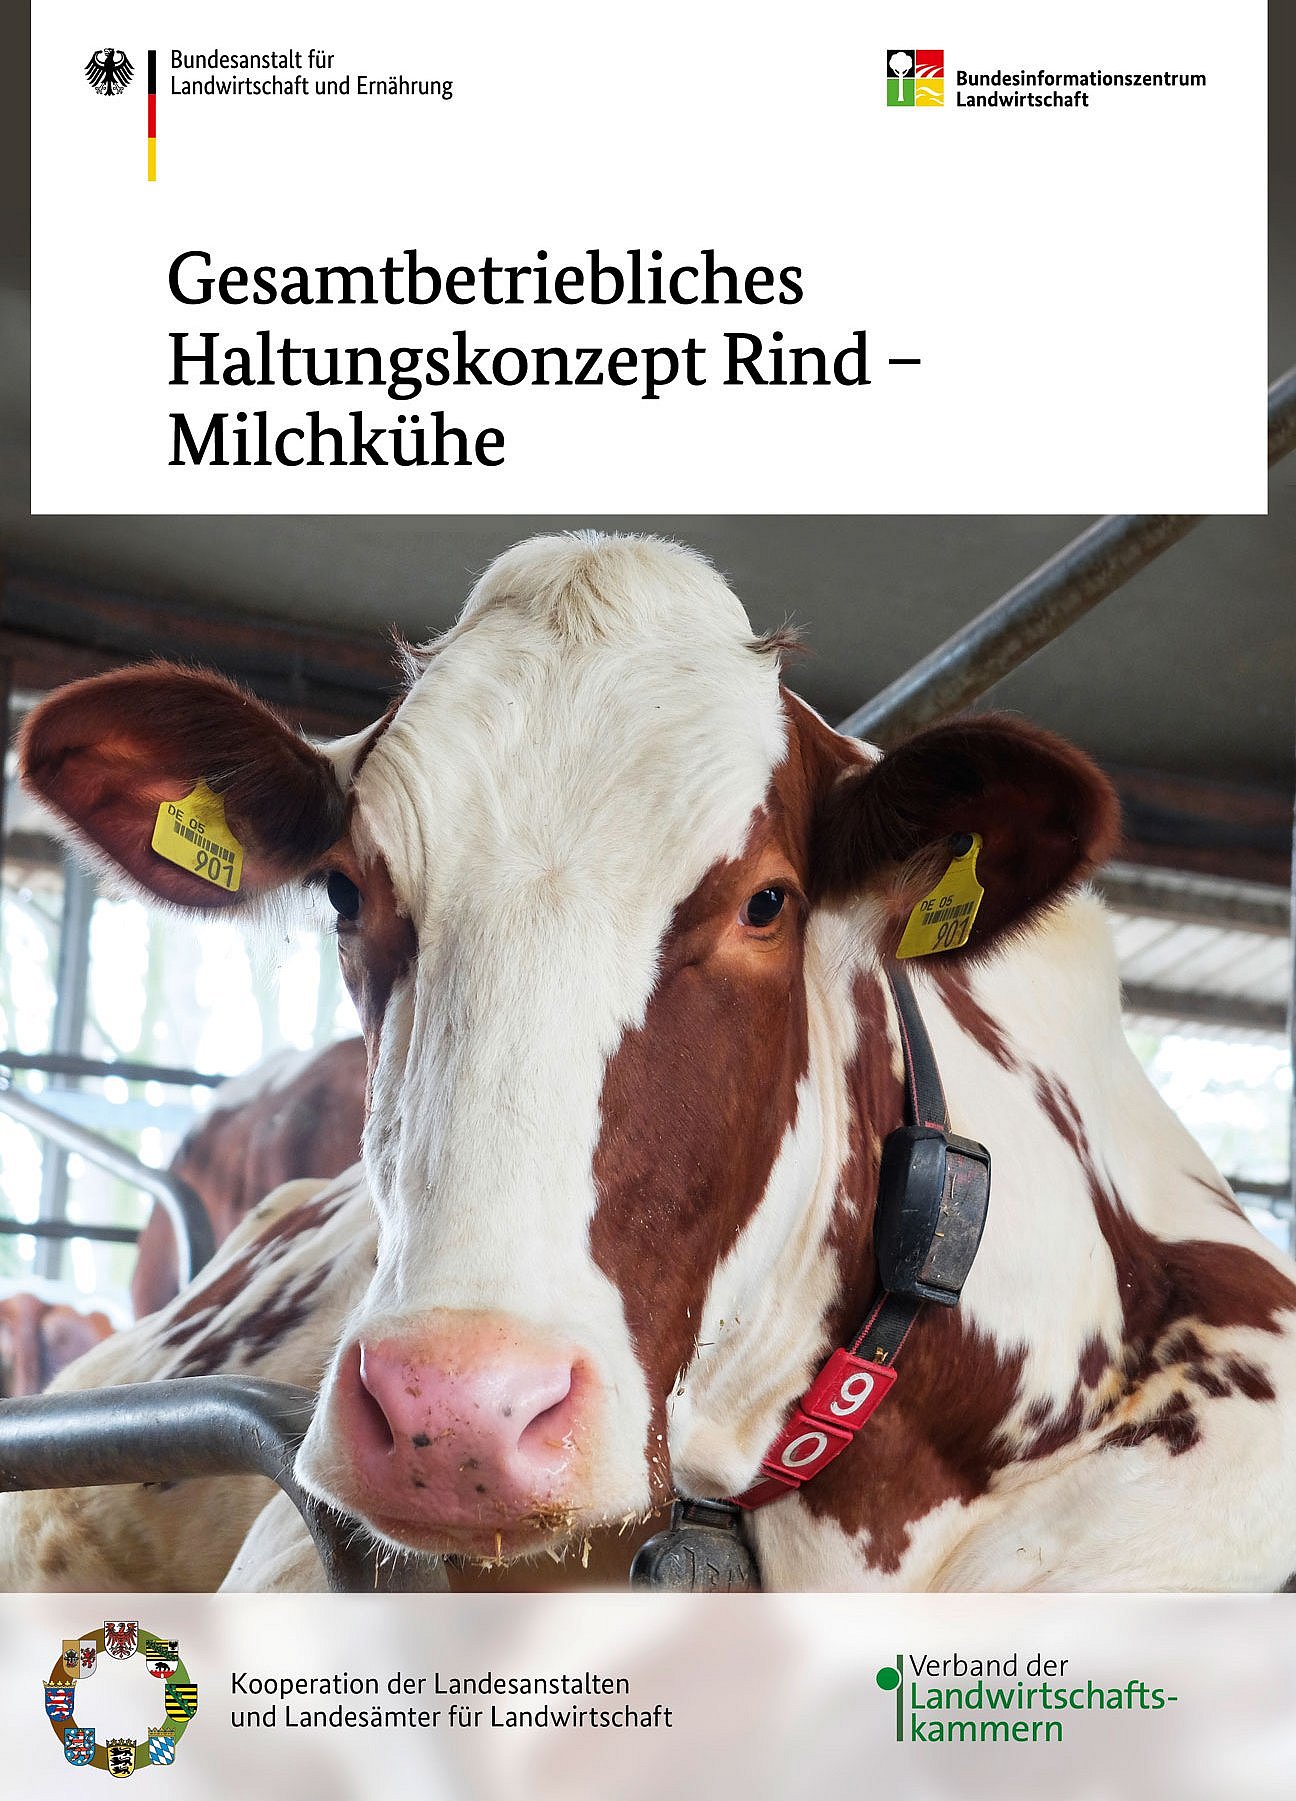 Das Bild zeigt die BZL-Broschüre "Gesamtbetriebliches Haltungssystem Rind - Milchkühe". 